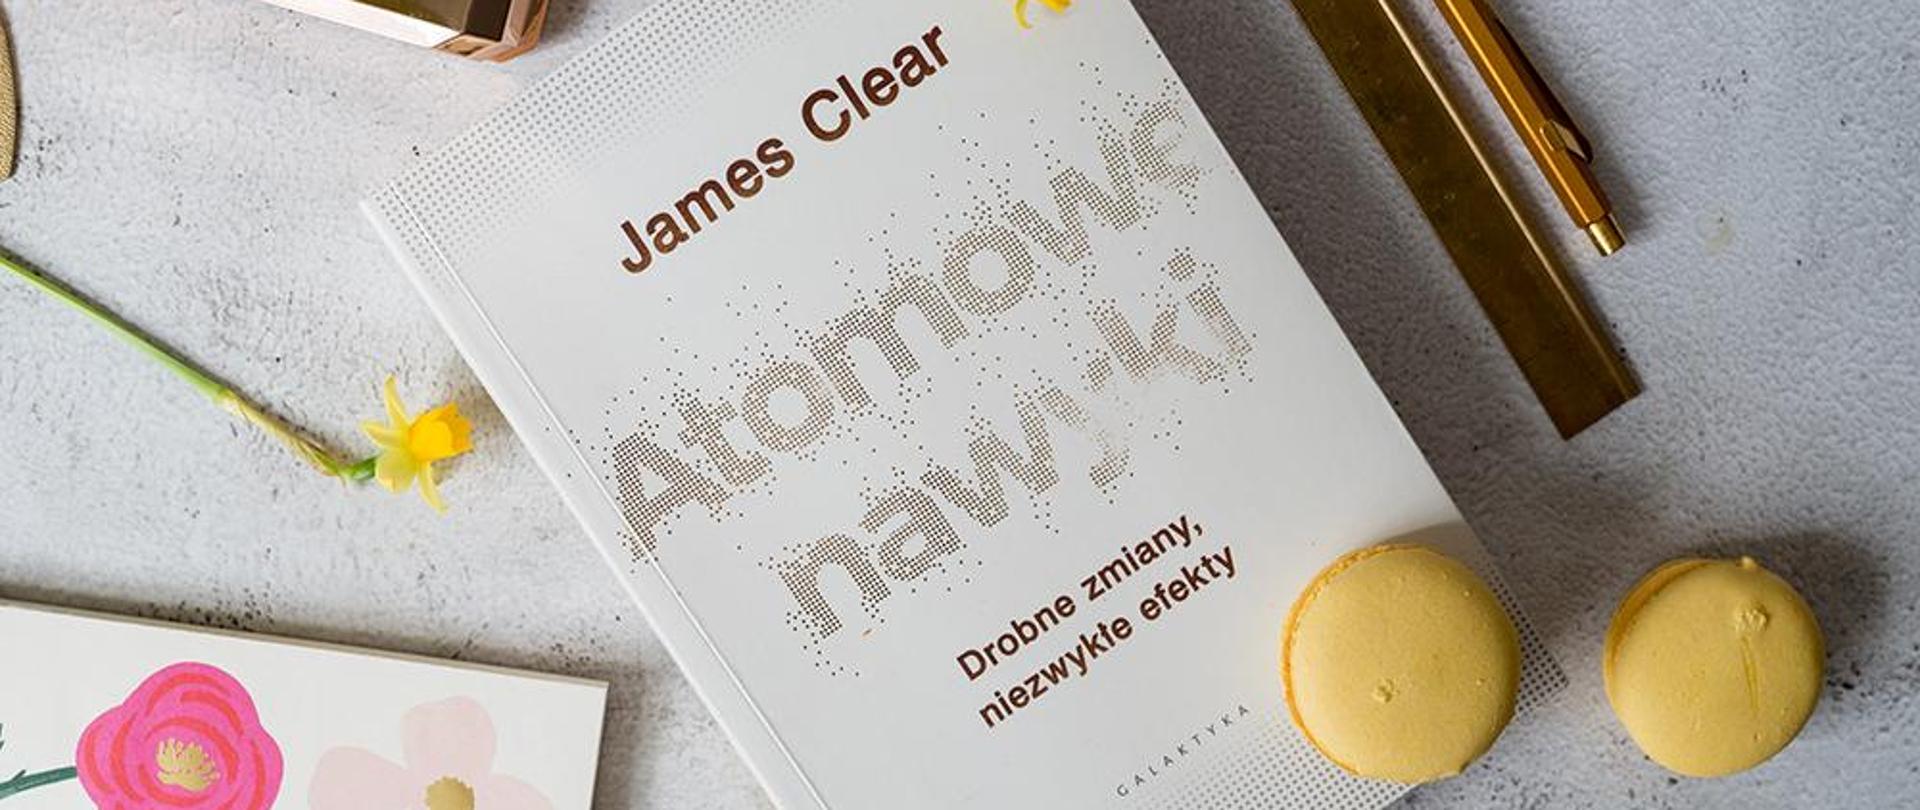 Książka z napisem na okładce: James Clear Atomowe nawyki. Drobne zmiany, niezwykłe efekty.